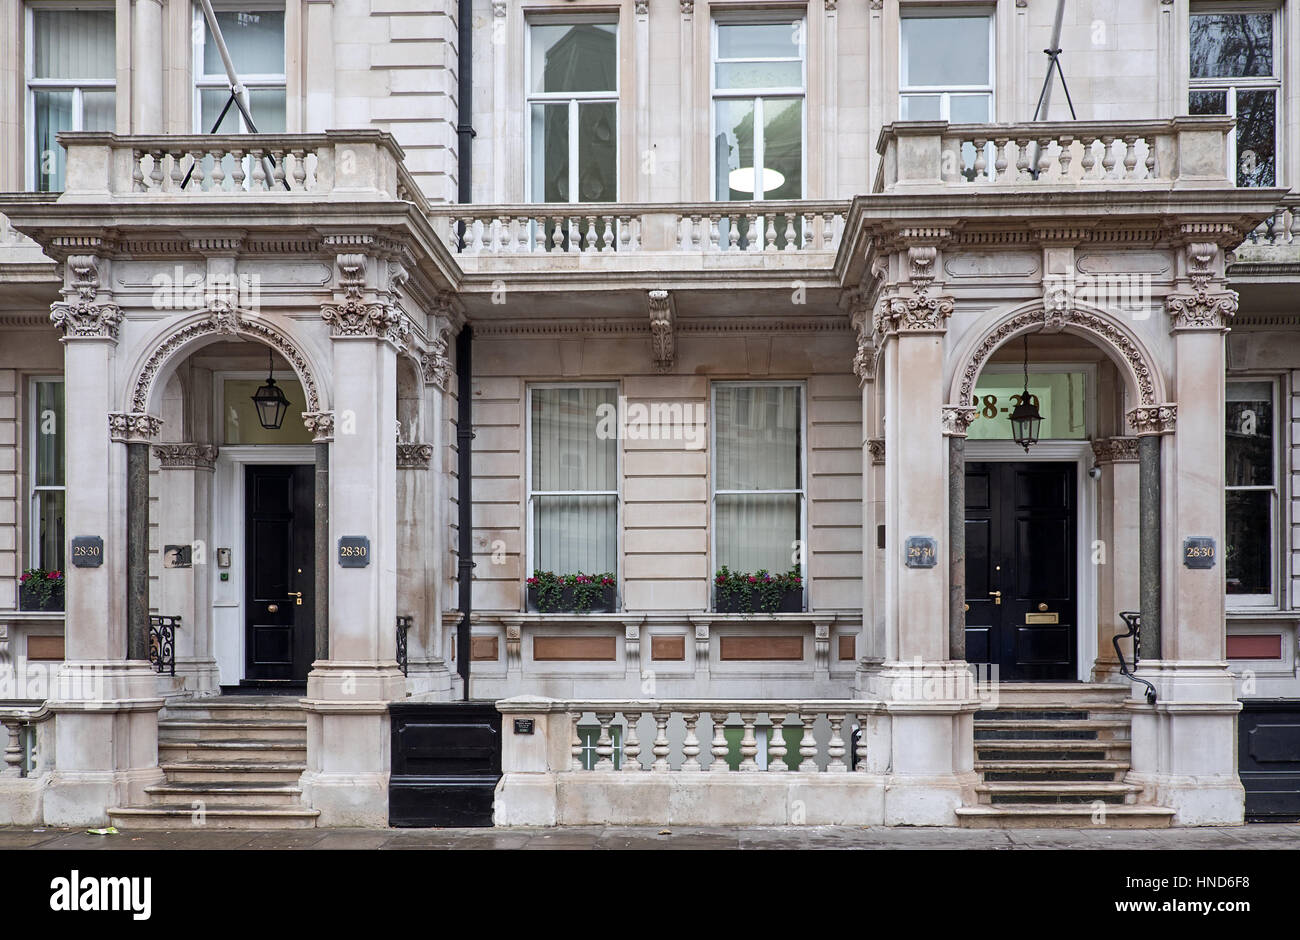 Verzierte Fassade mit aufwendigen Dekorationen rund um Eingang Tierheim, unterstützt auf Spalten eines Gebäudes in London City Stockfoto